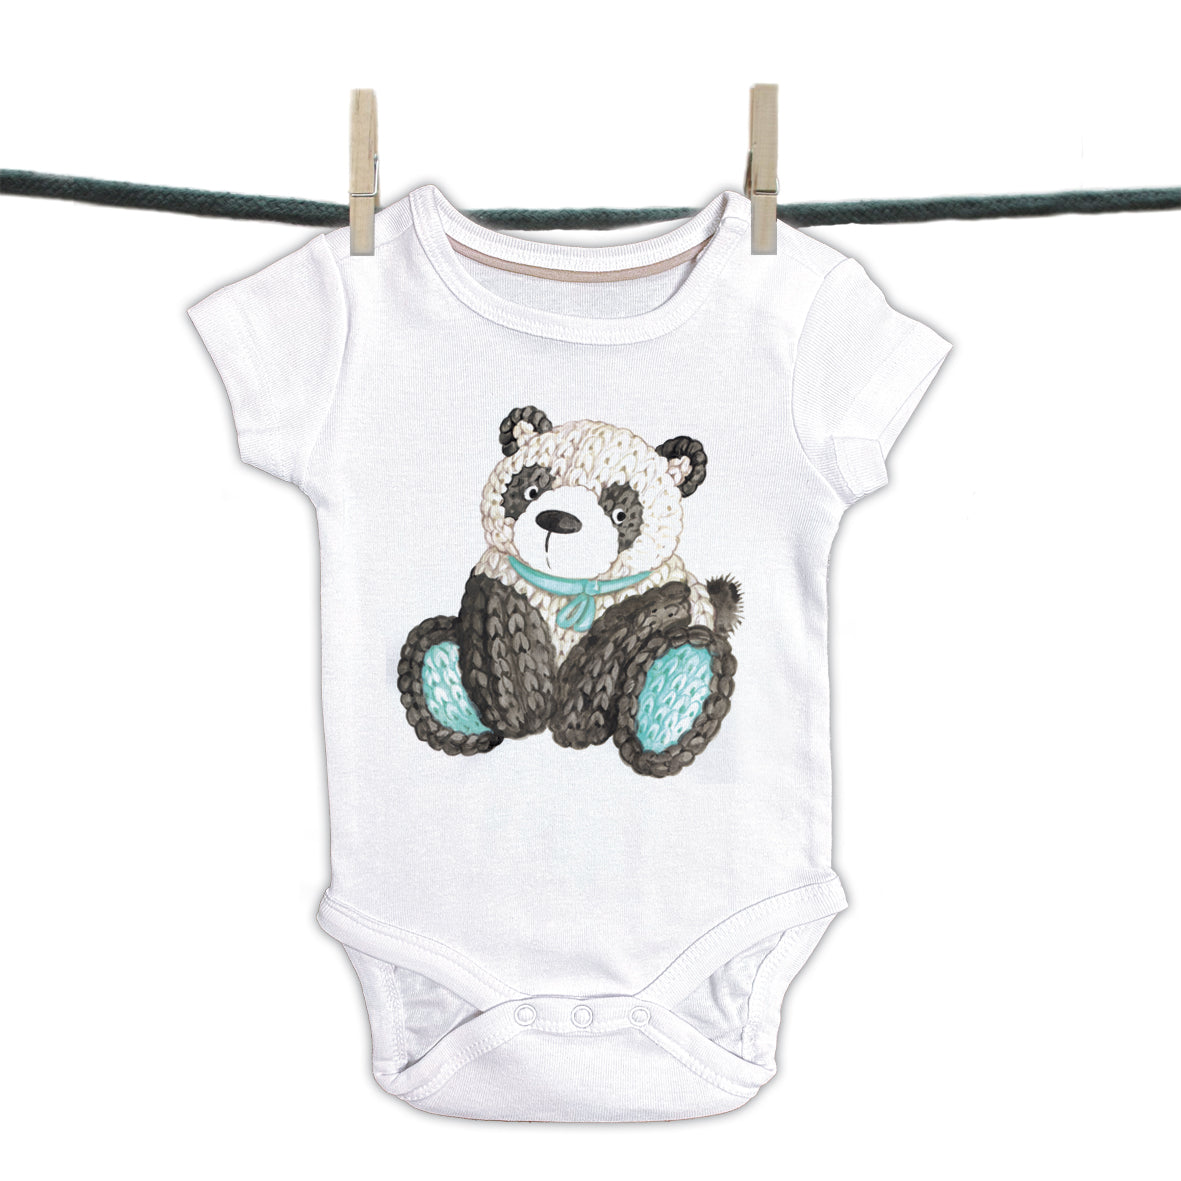 Babyromper Inaya collectie - Panda